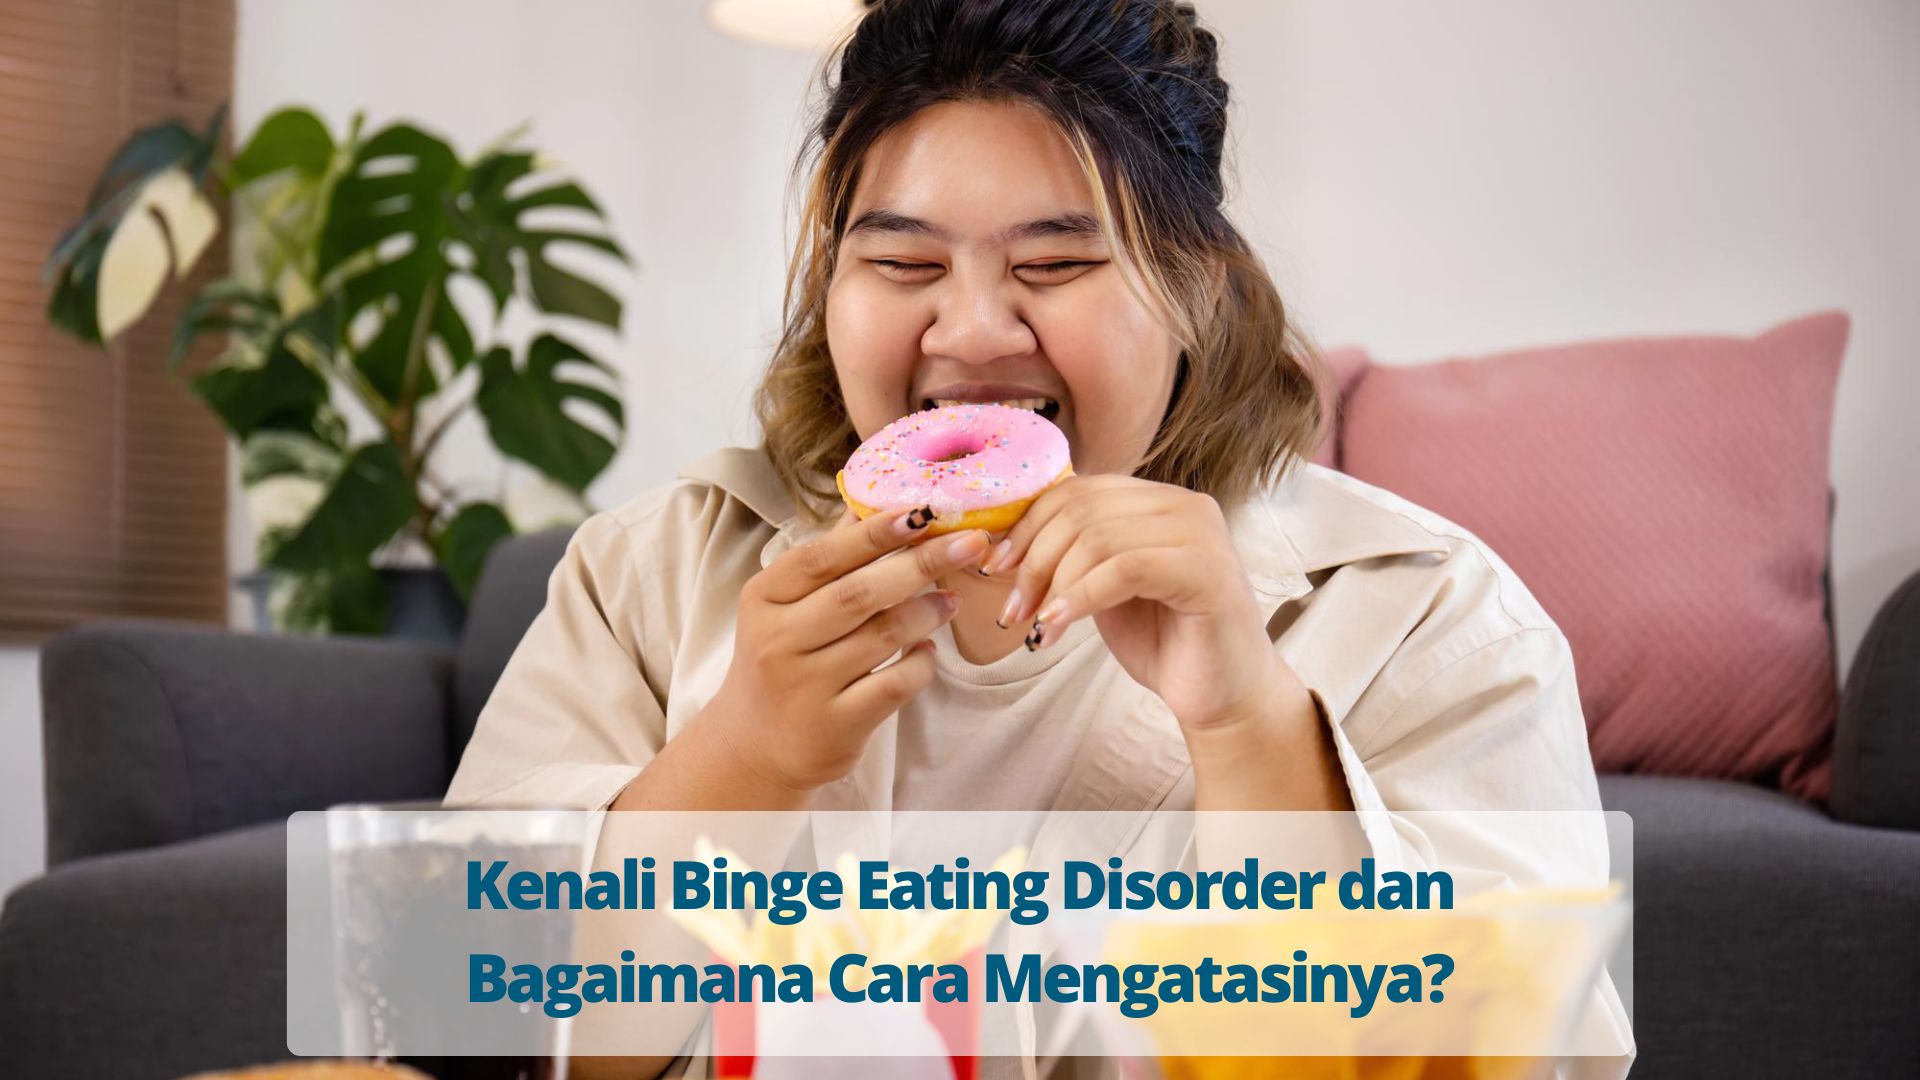 Kenali Binge Eating Disorder dan Bagaimana Cara Mengatasinya